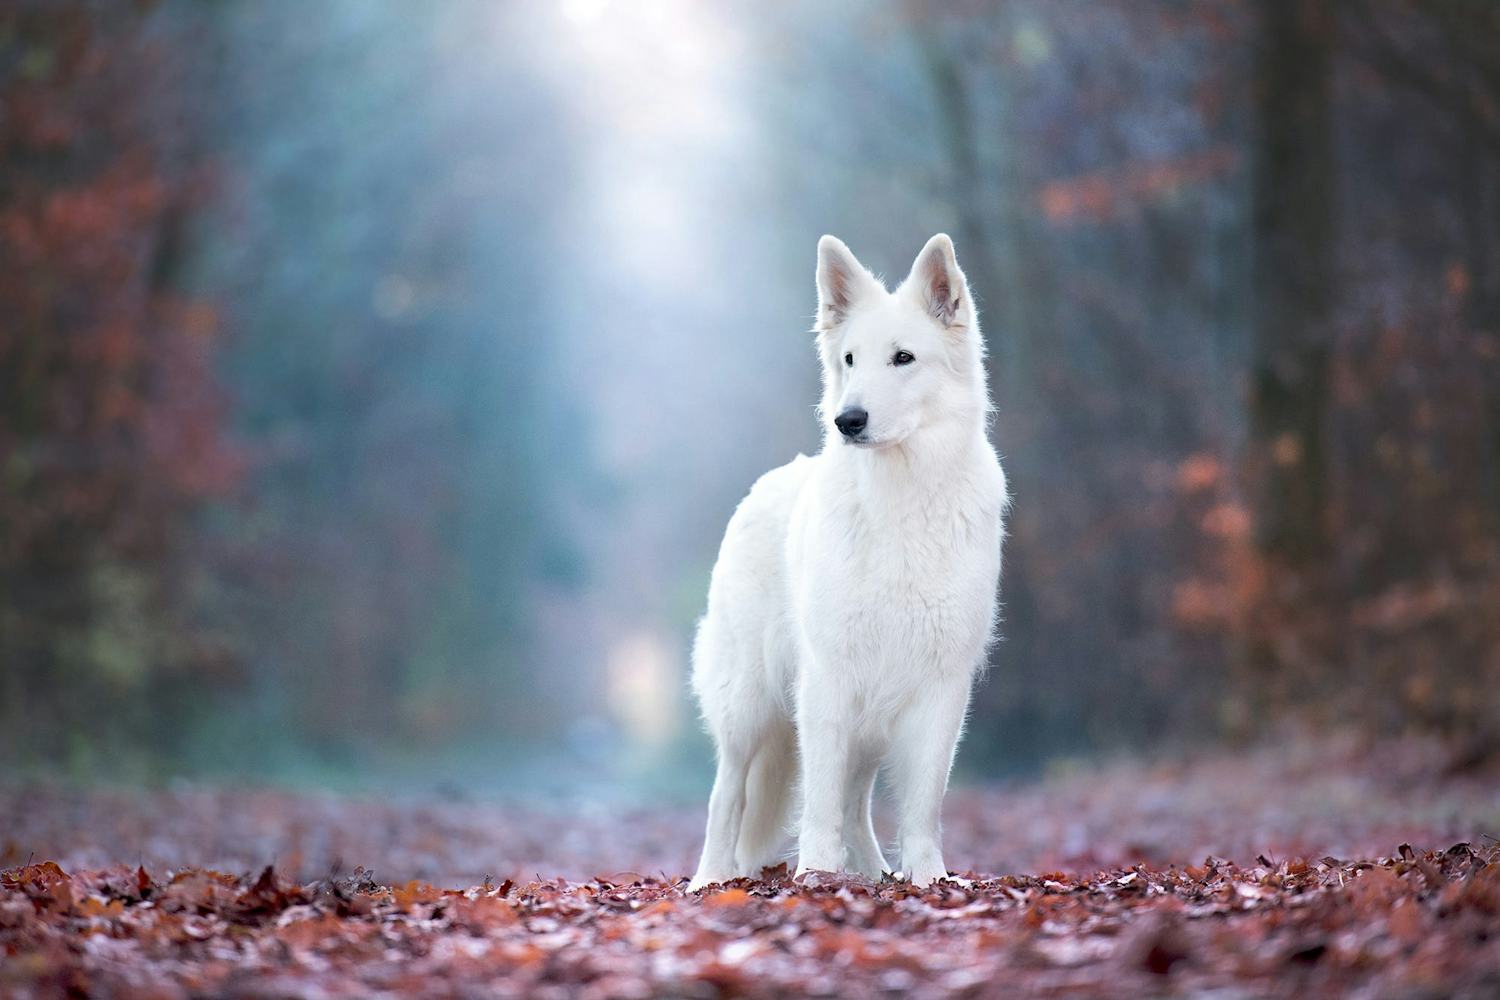 Secondary image of White Shepherd dog breed